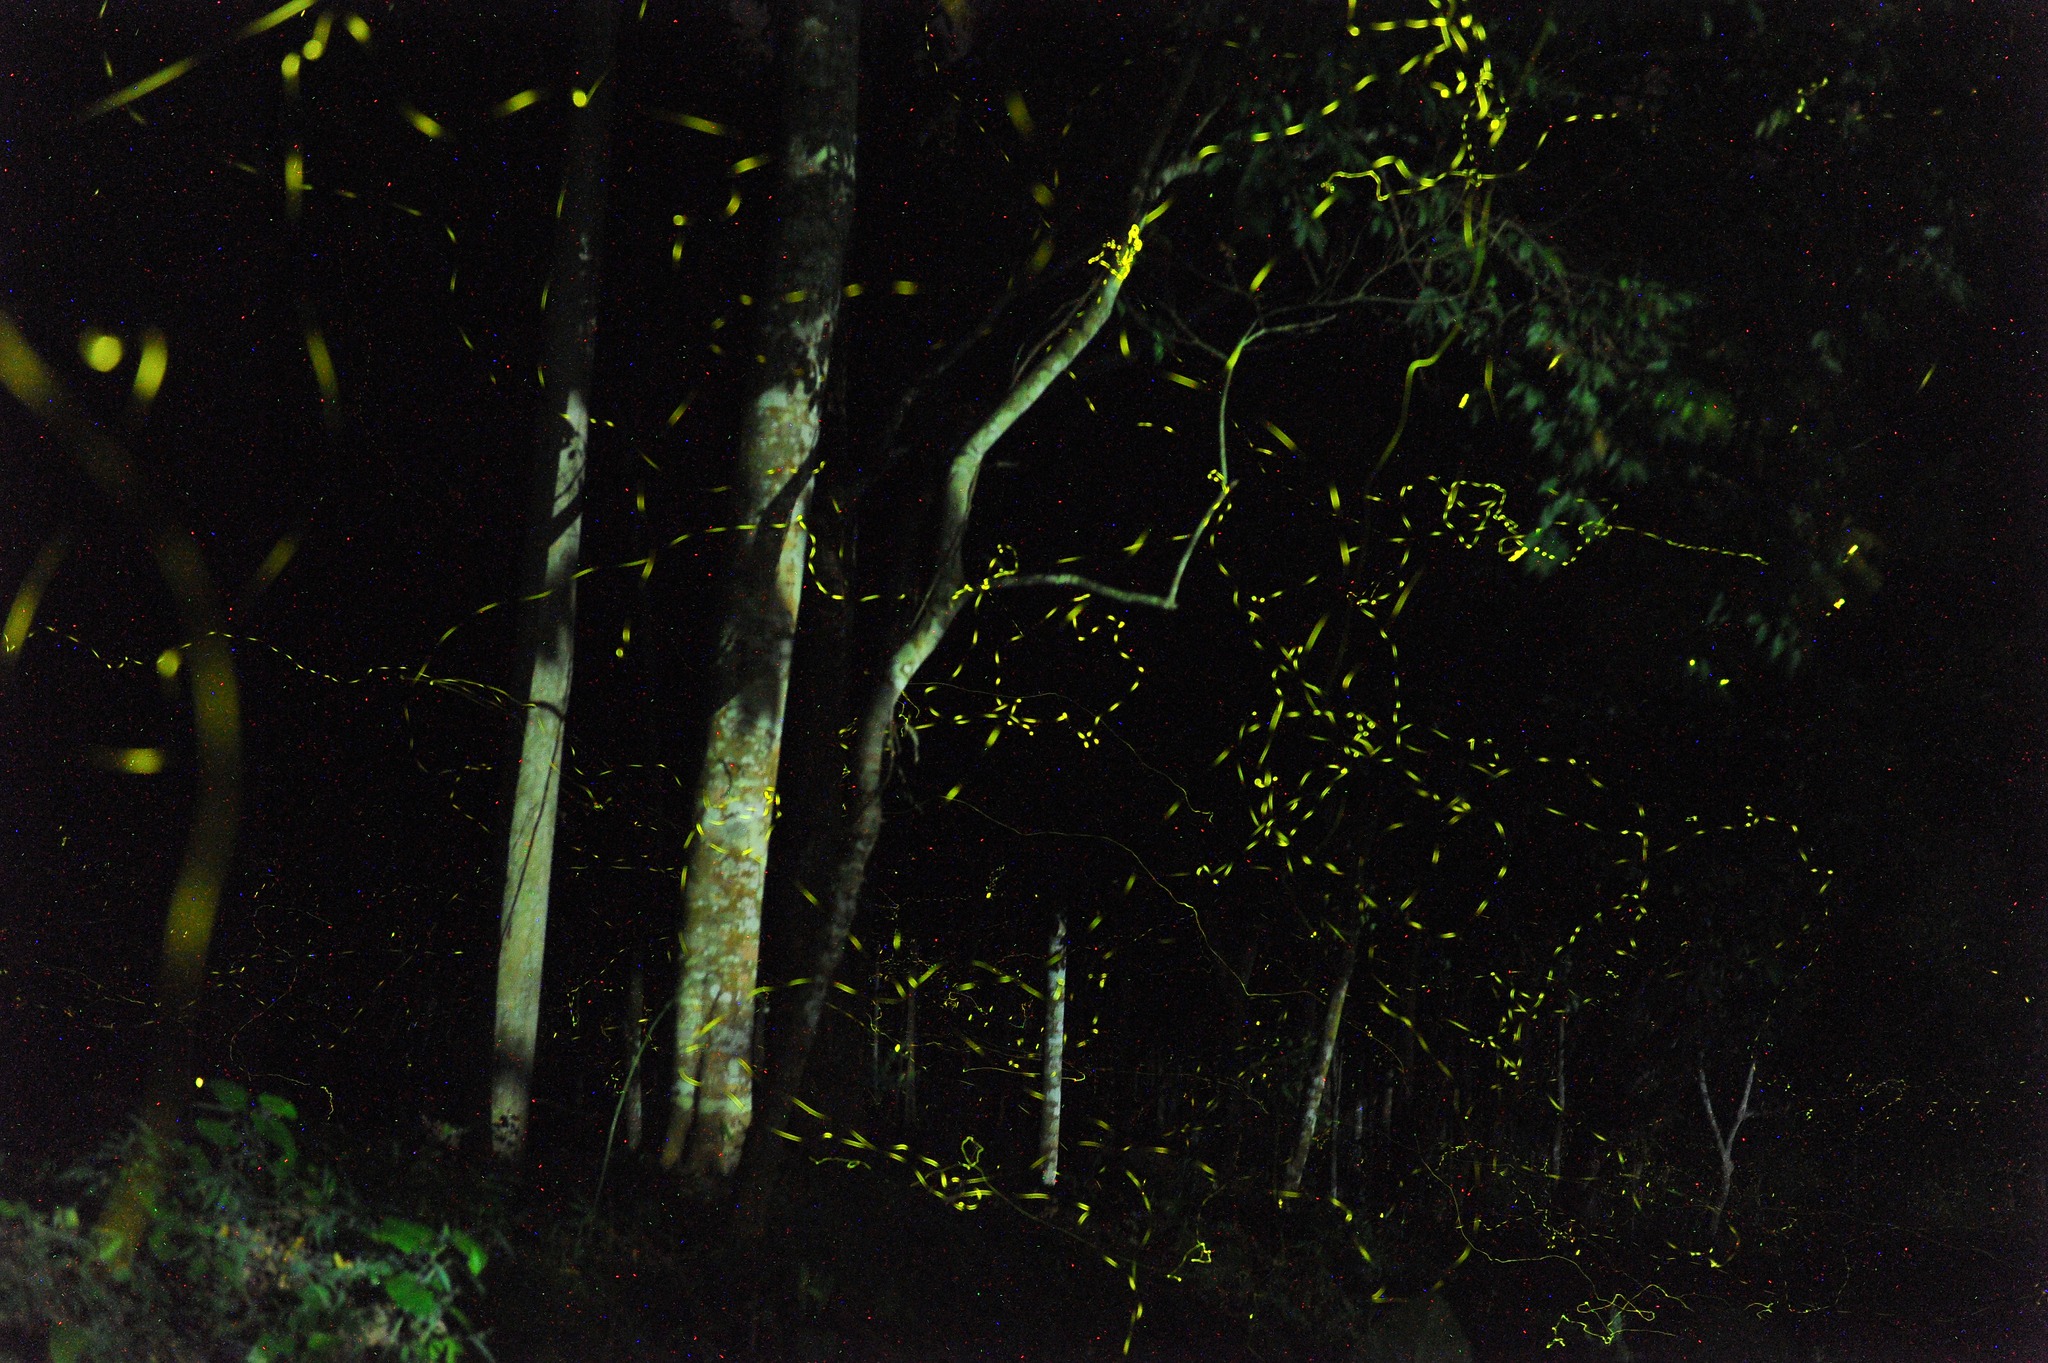 Vào rừng xem ngàn ánh sao 'mở hội' giữa màn đêm - 4